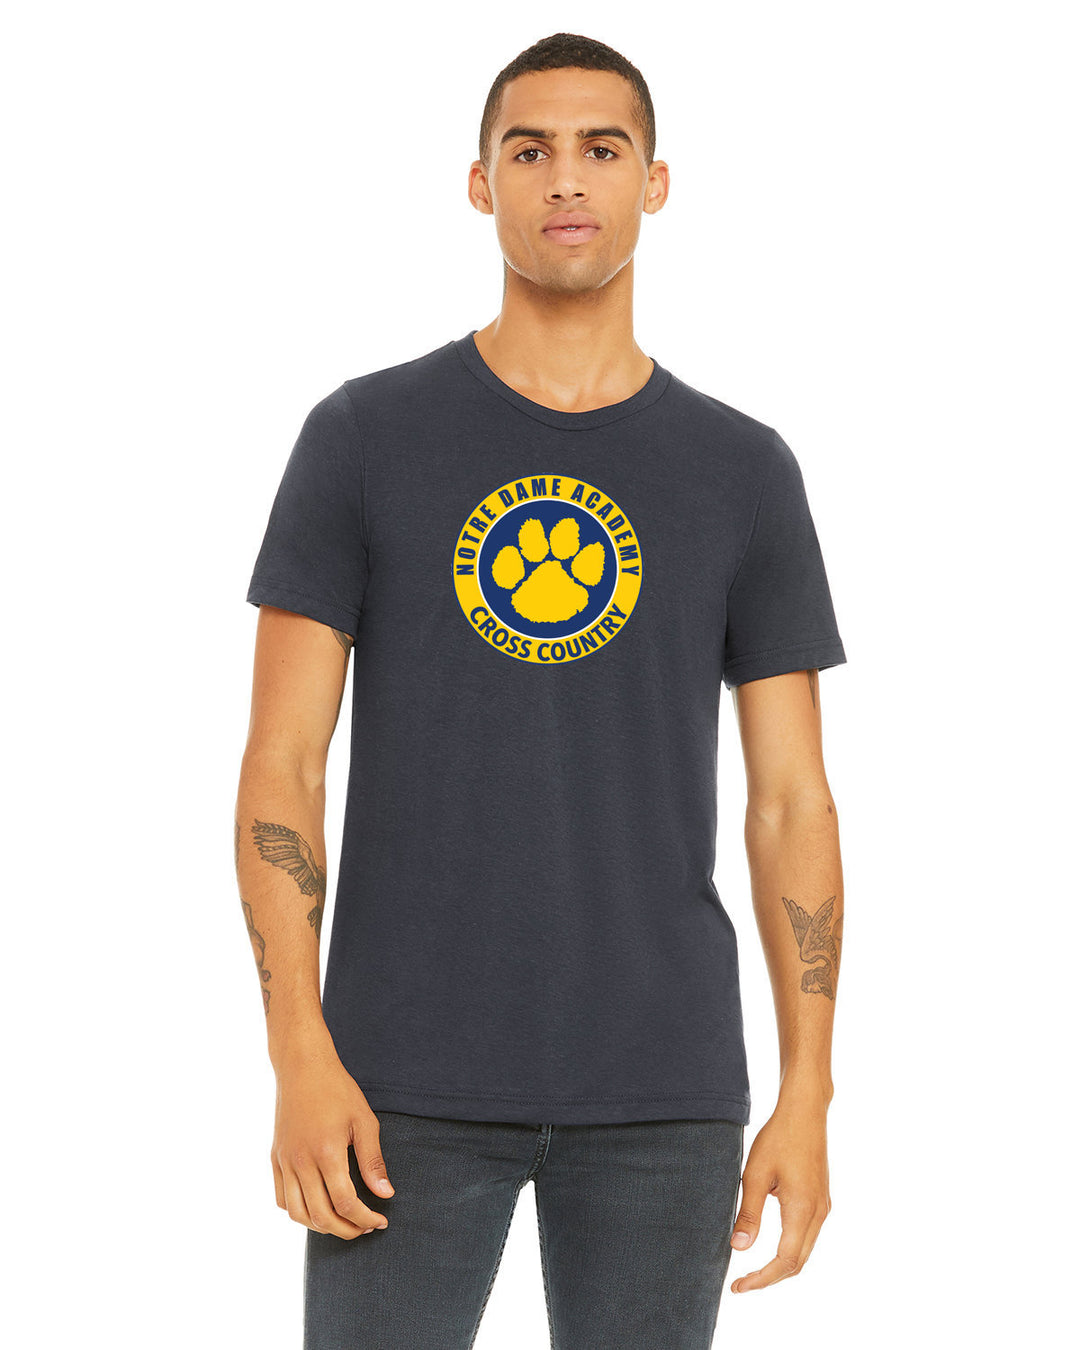 NDA Cross Country Unisex T-Shirt (3001CVC)